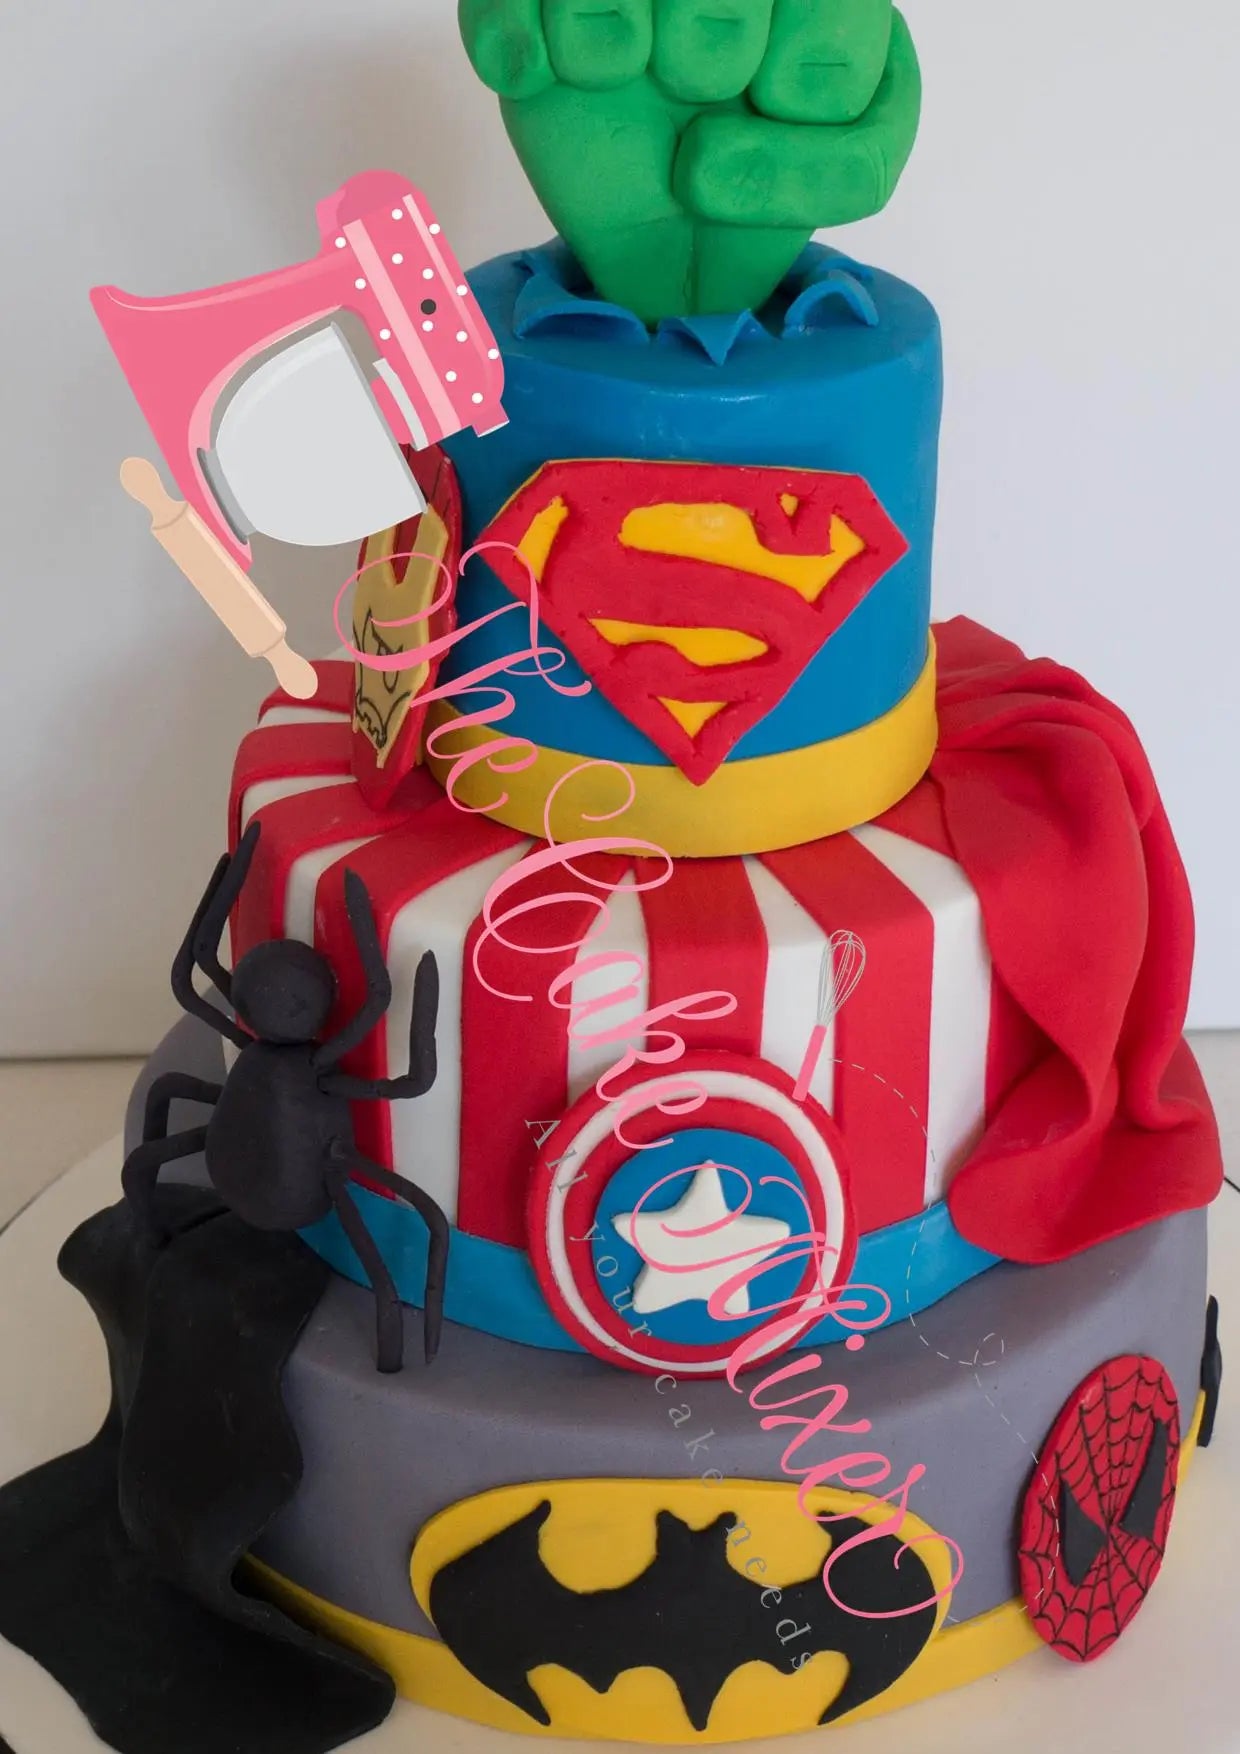 Beautiful Handmade Superhero Cake toys&parties.co.nz